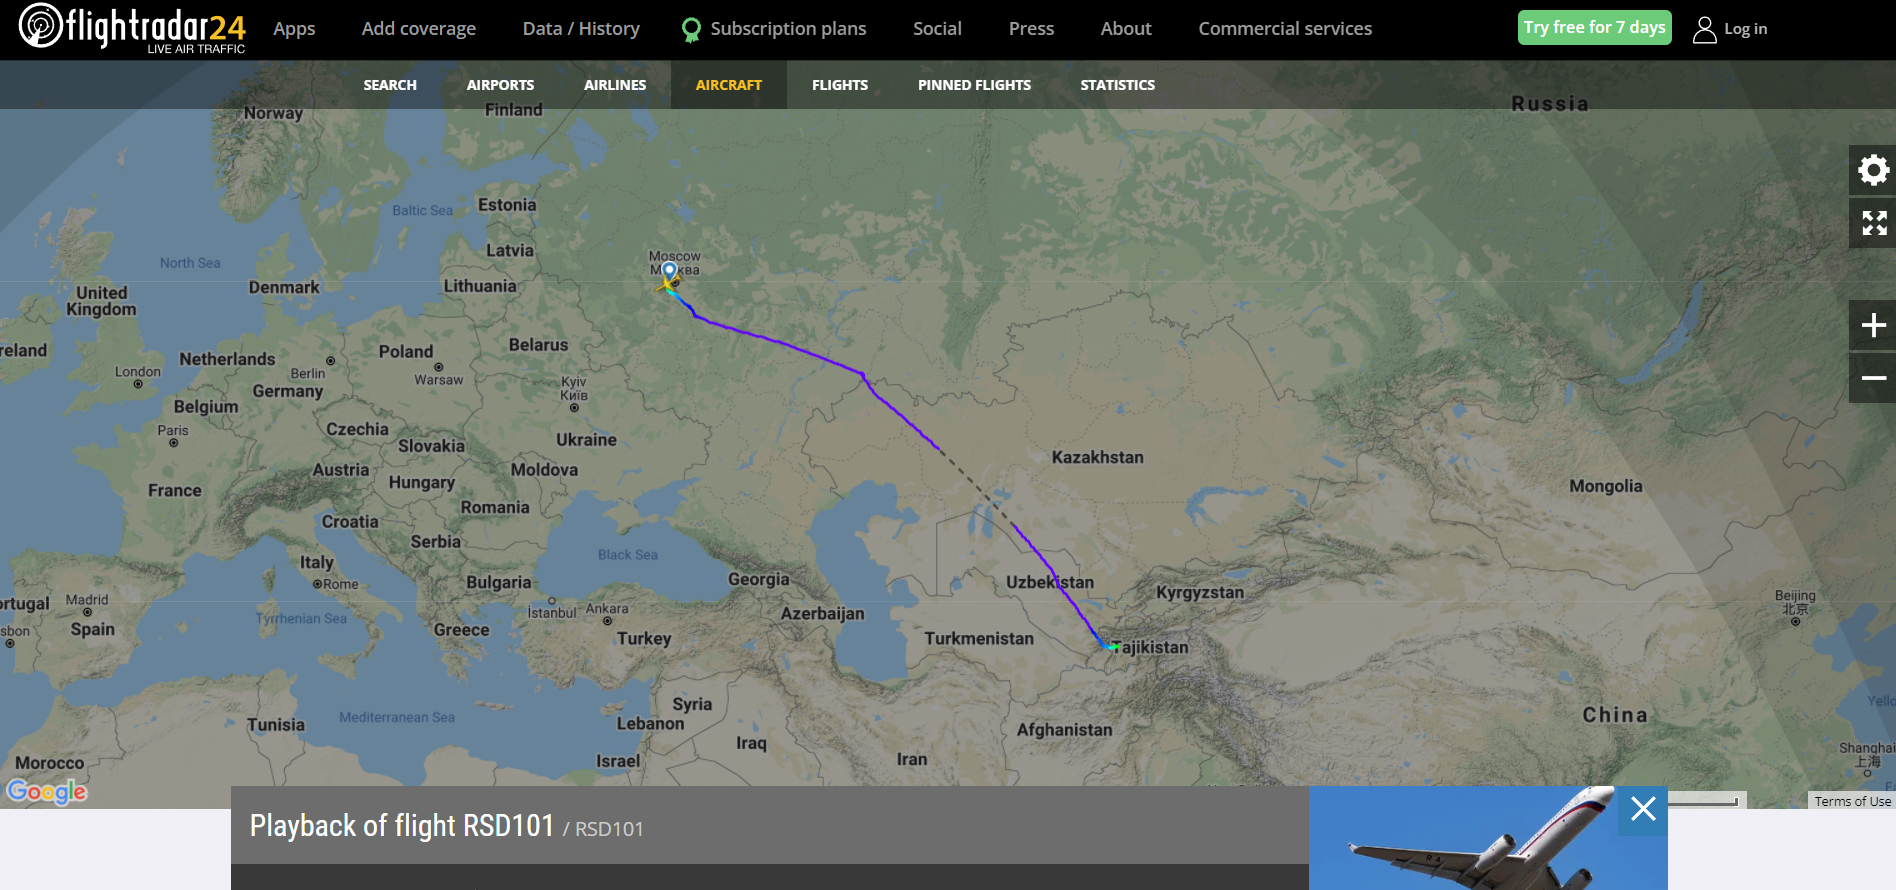 З Росії до Казахстану вилетів літак: йому довелося змінити курс після захоплення аеропорту в Алмати. Карта